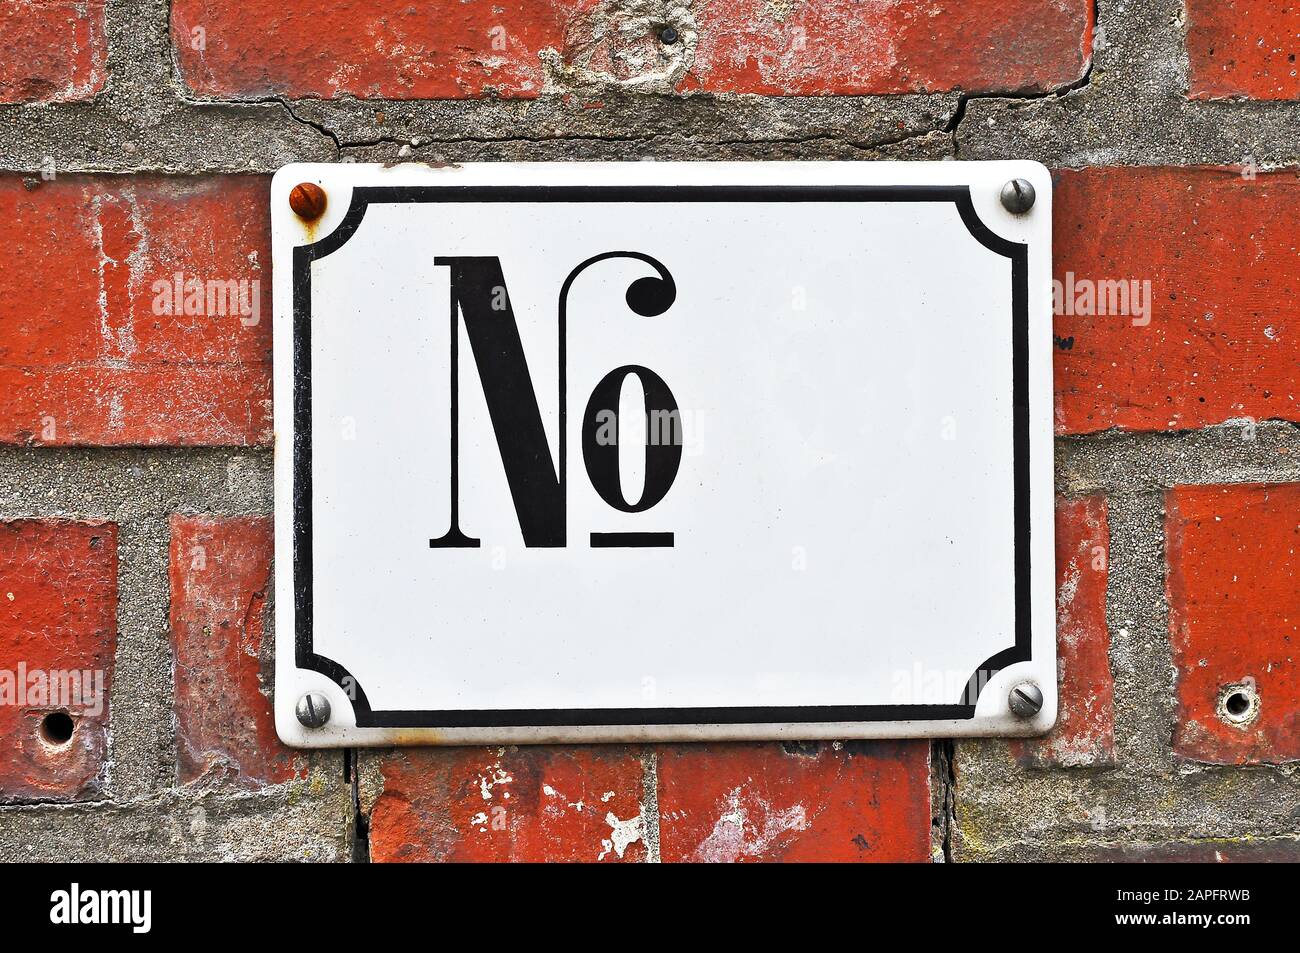 Una targa di numeri di casa di colore bianco, con l'abbreviazione 'No.', fissata su una parete di mattoni. Simulazione/modello per i progettisti Foto Stock